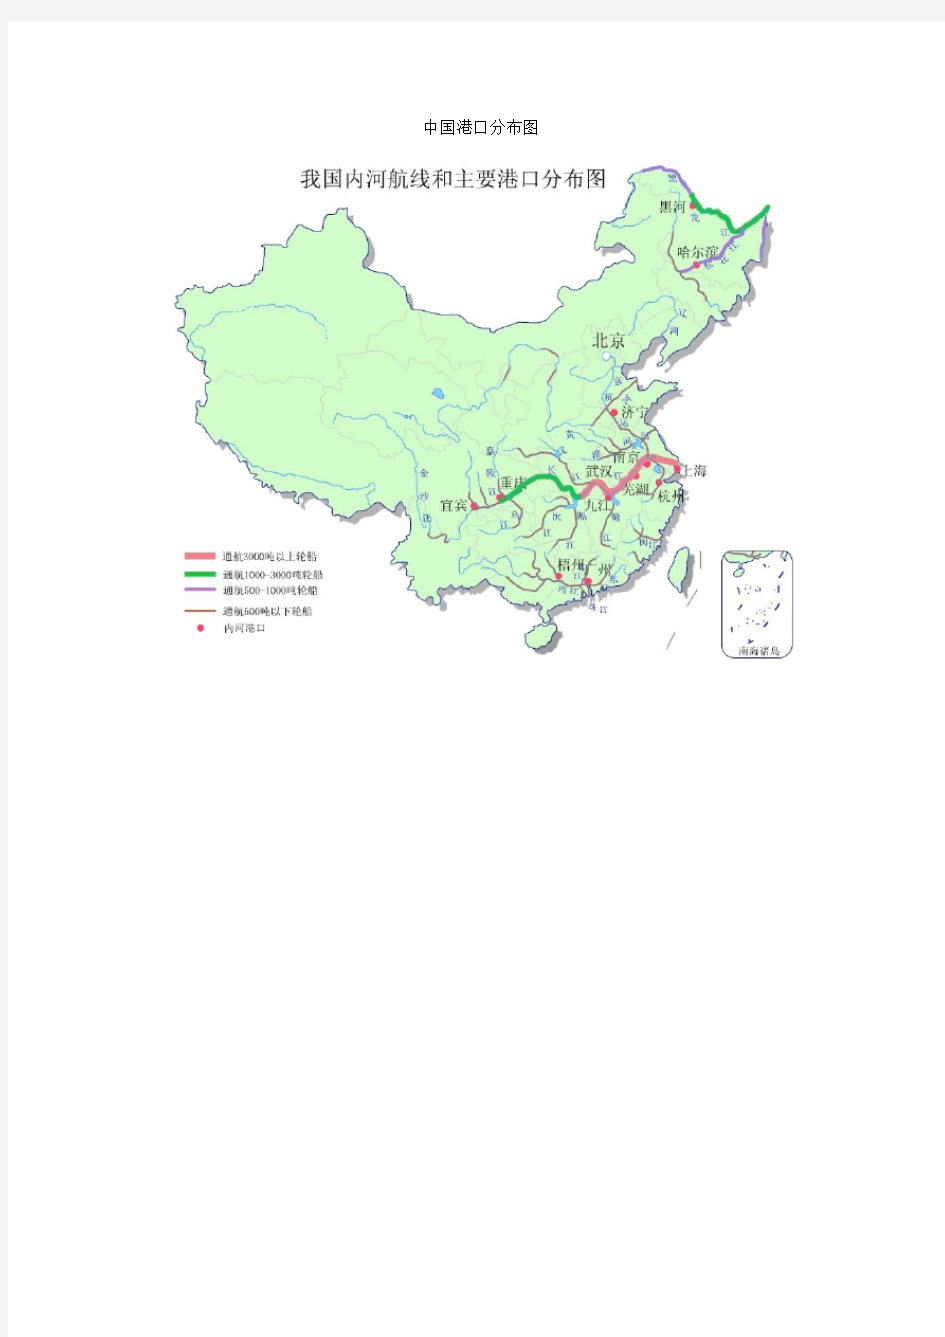 中国港口、码头分布图